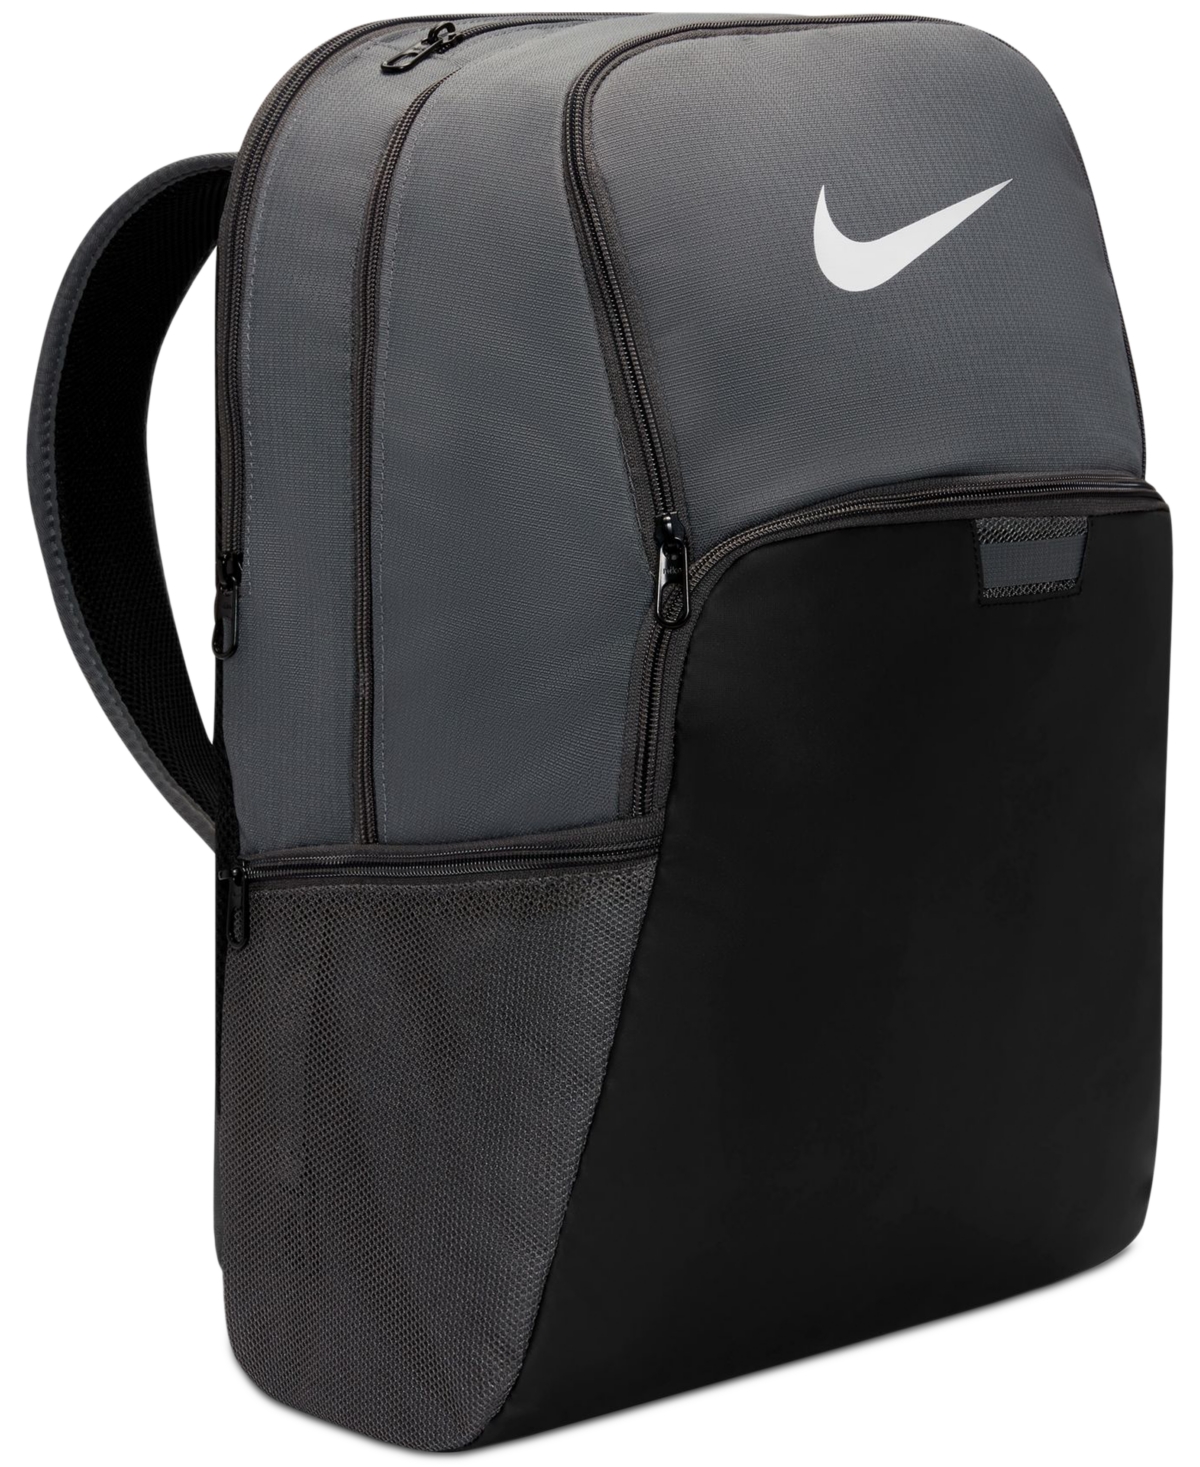 Men's Brasilia 9.5 Training Backpack (Extra Large, 30L) - Bicoastal/black/white